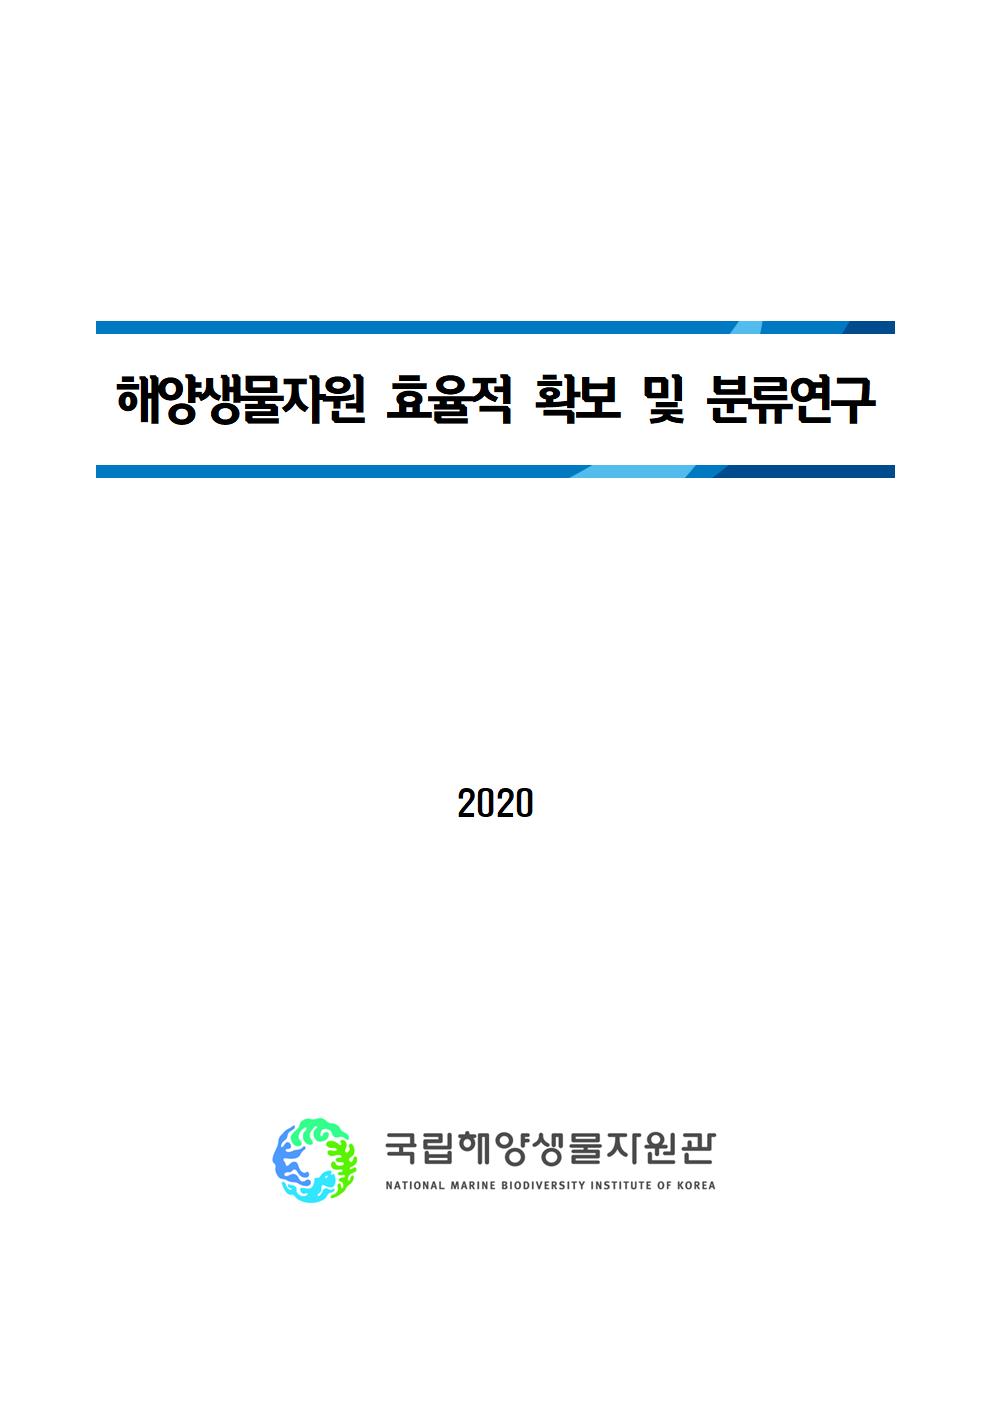 [2020년 기관고유사업] 2020년 해양생물자원 효율적 확보 및 분류연구